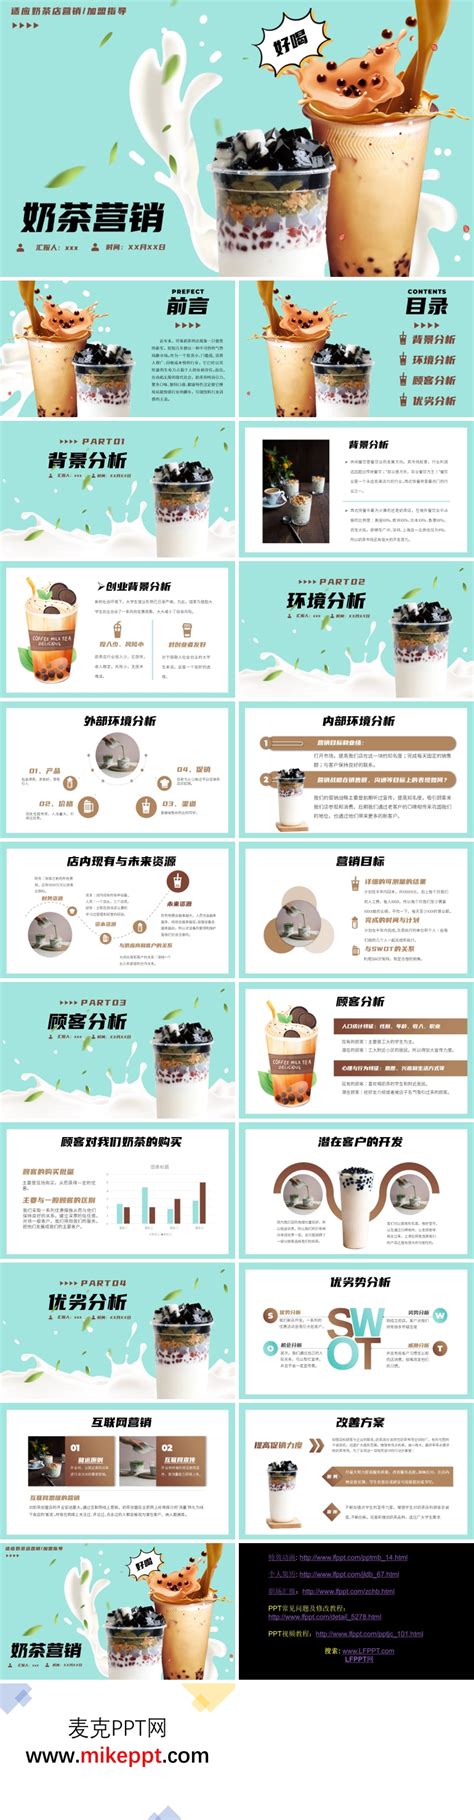 微商奶茶新店开业营销引流手机海报